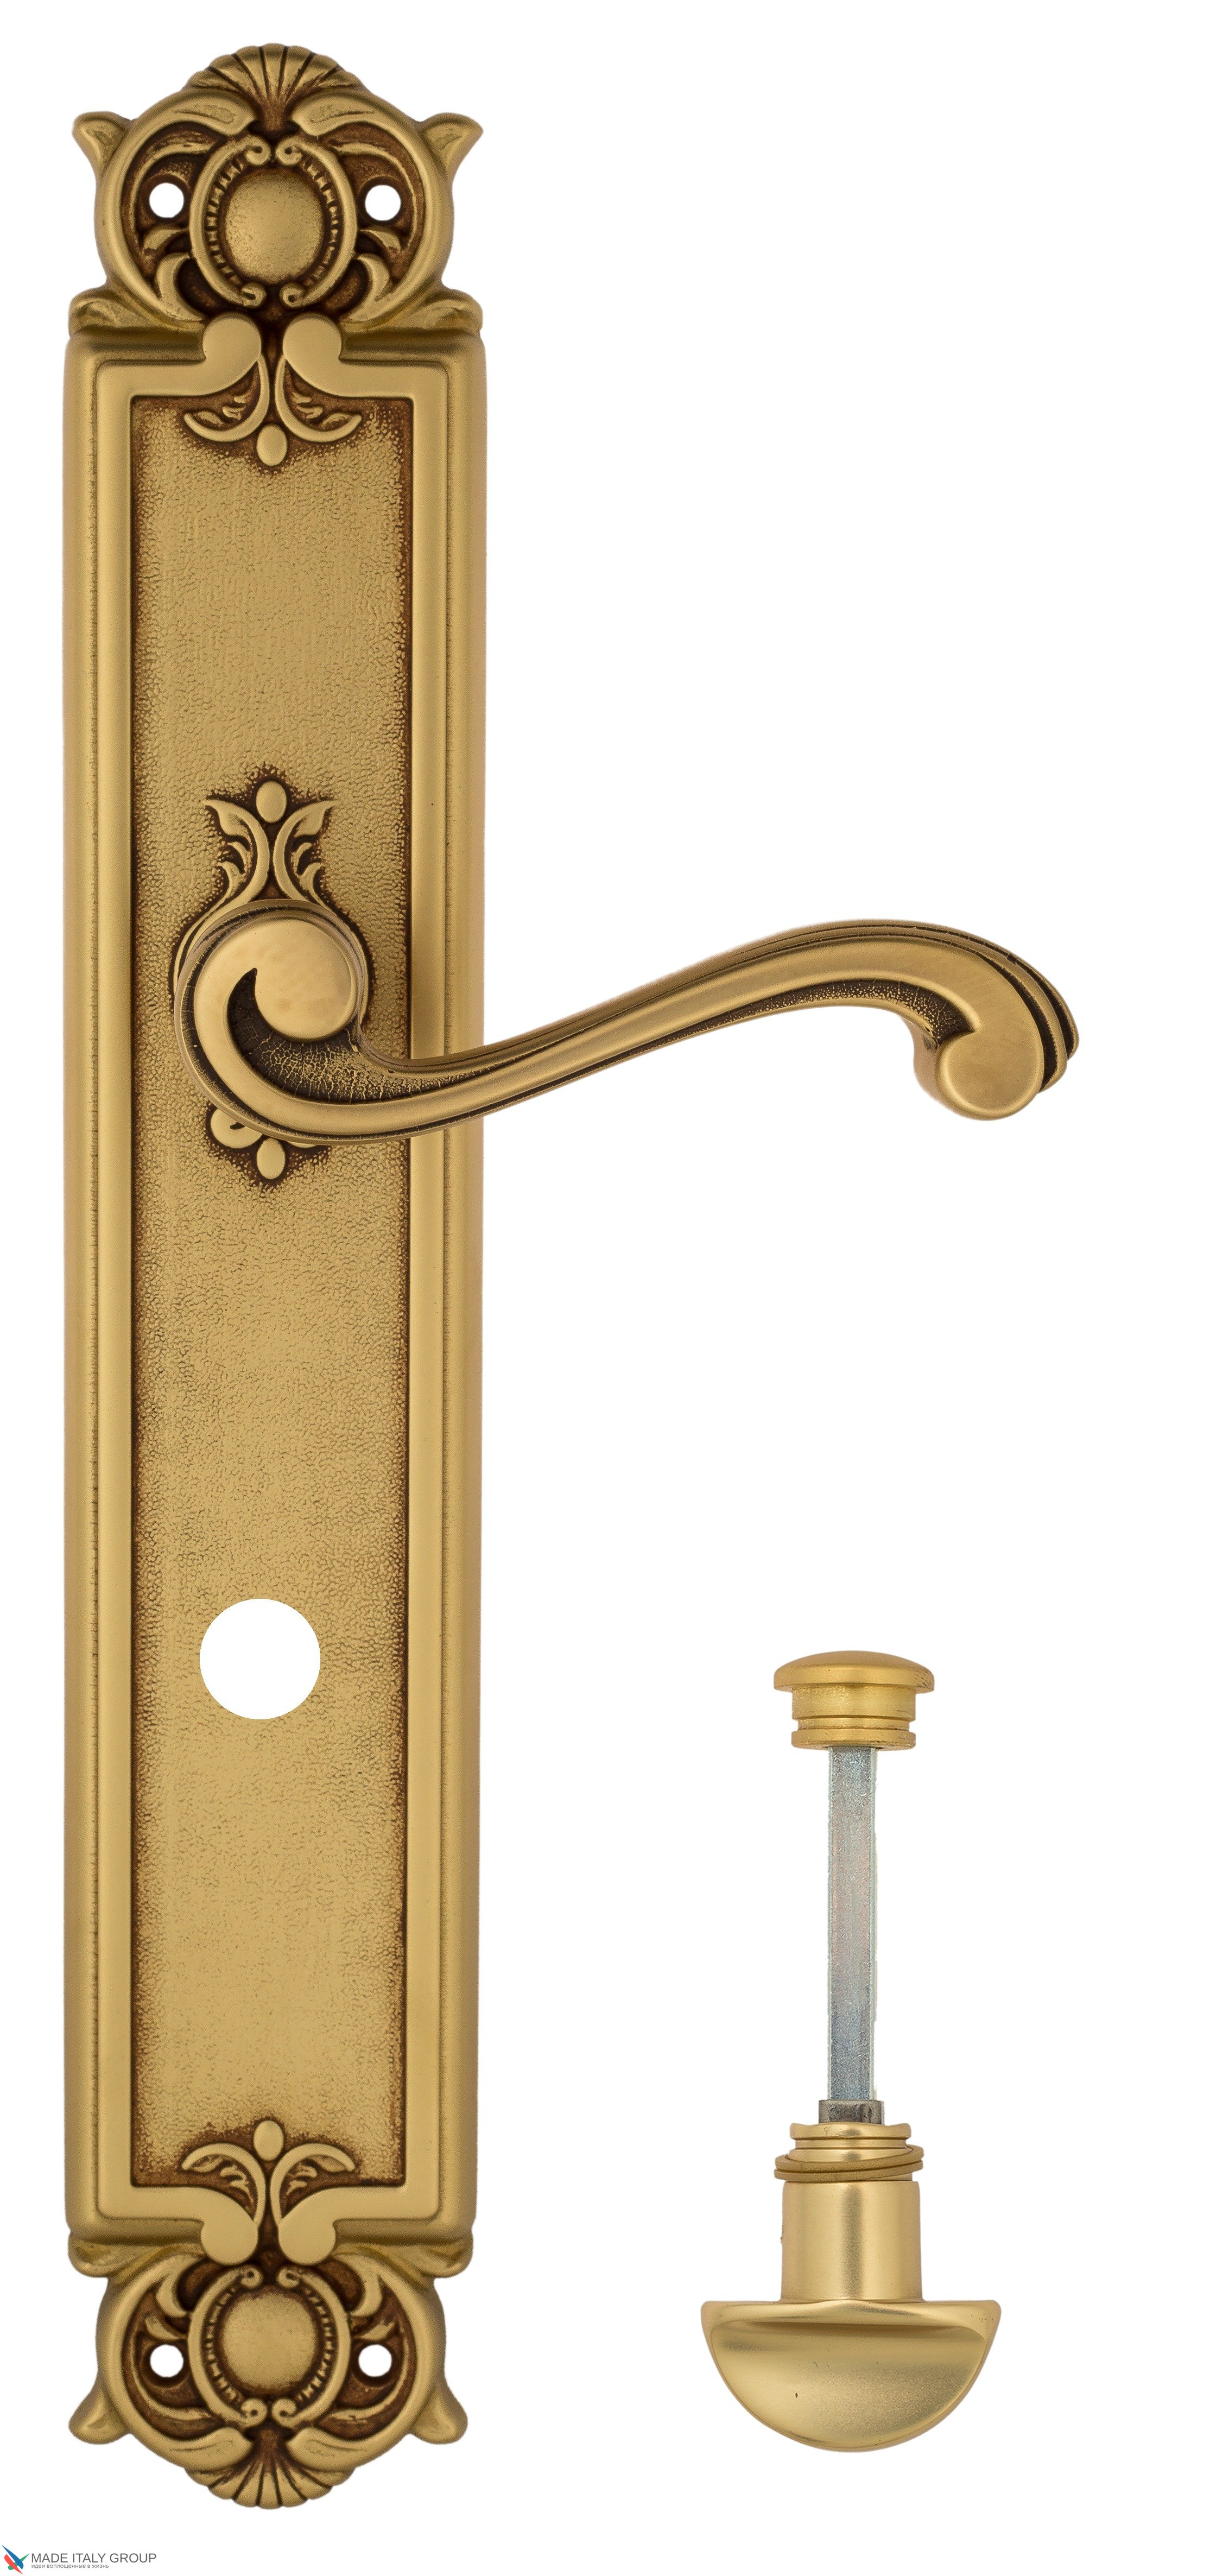 Дверная ручка Venezia "VIVALDI" WC-2 на планке PL97 французское золото + коричневый